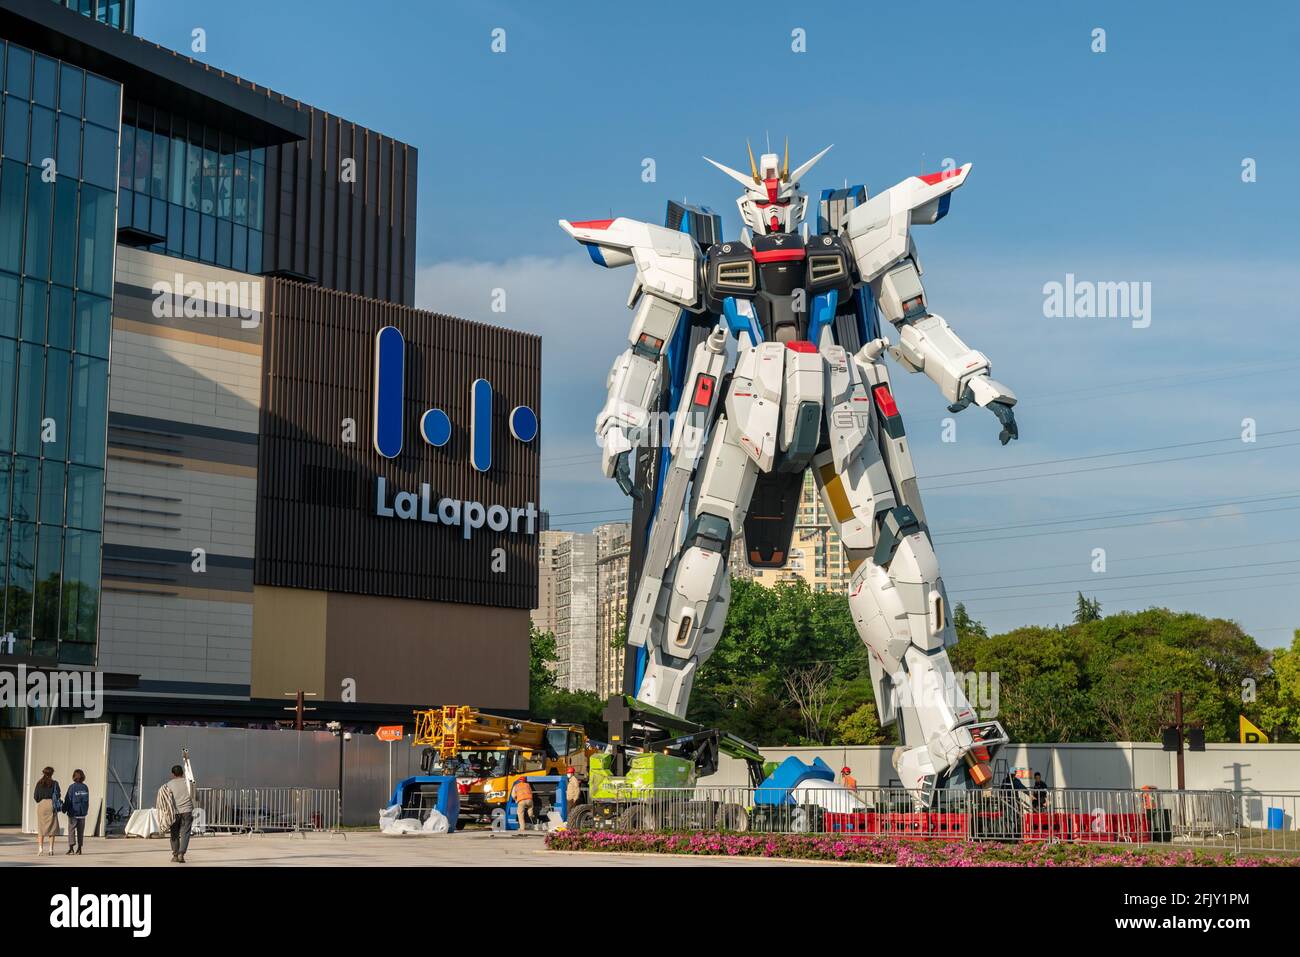 Shanghai, Cina. 26 Apr 2021. Il Gundam, alto 18.03 metri, si trova sulla piazza LaLaport di Shanghai, in Cina, il 26 aprile 2021.(Photo by TPG/cnsphotos) Credit: TopPhoto/Alamy Live News Foto Stock